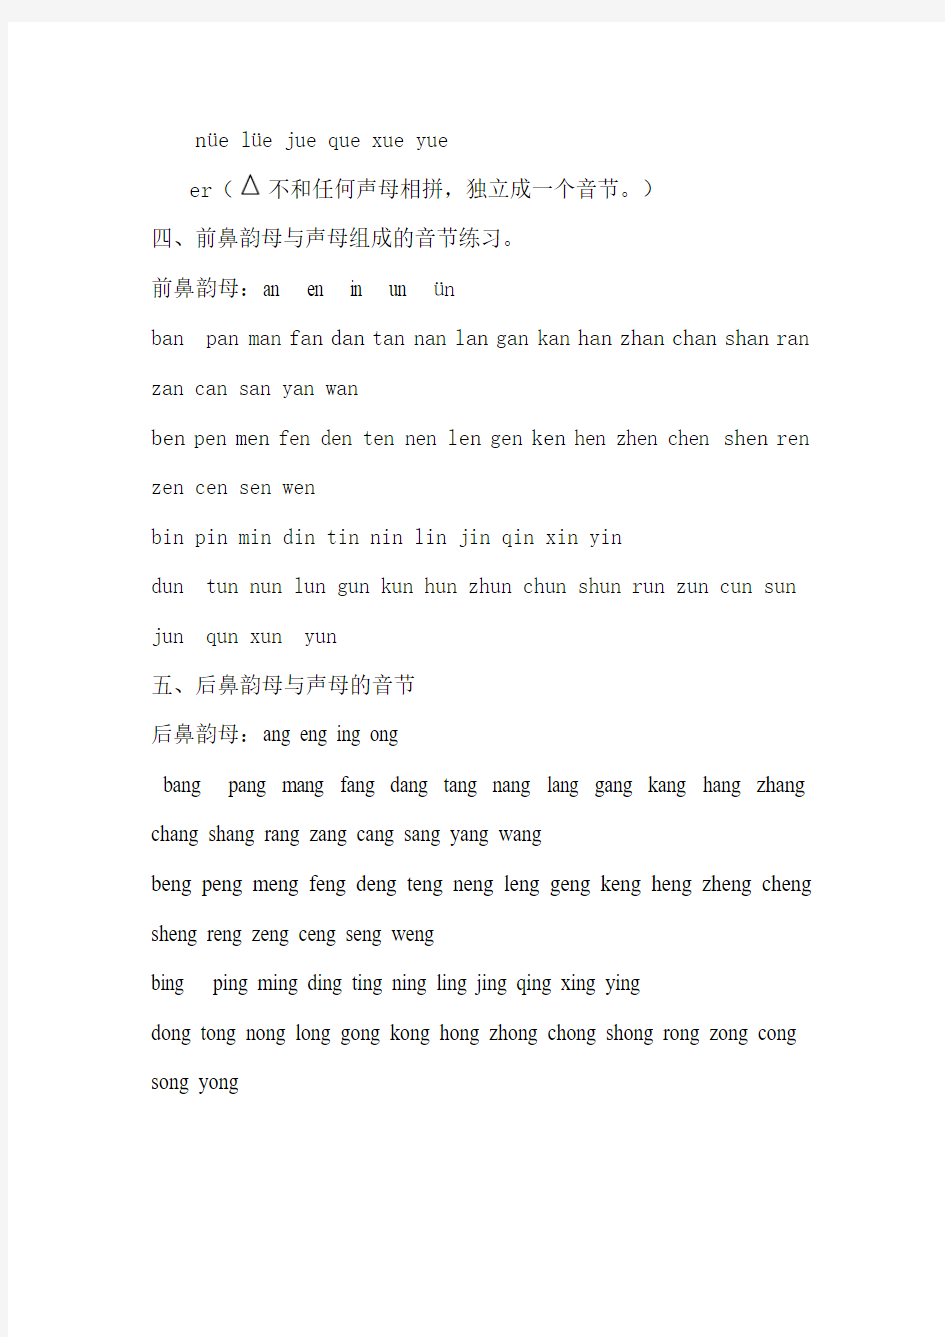 汉语拼音——声母韵母组成的音节(全部)